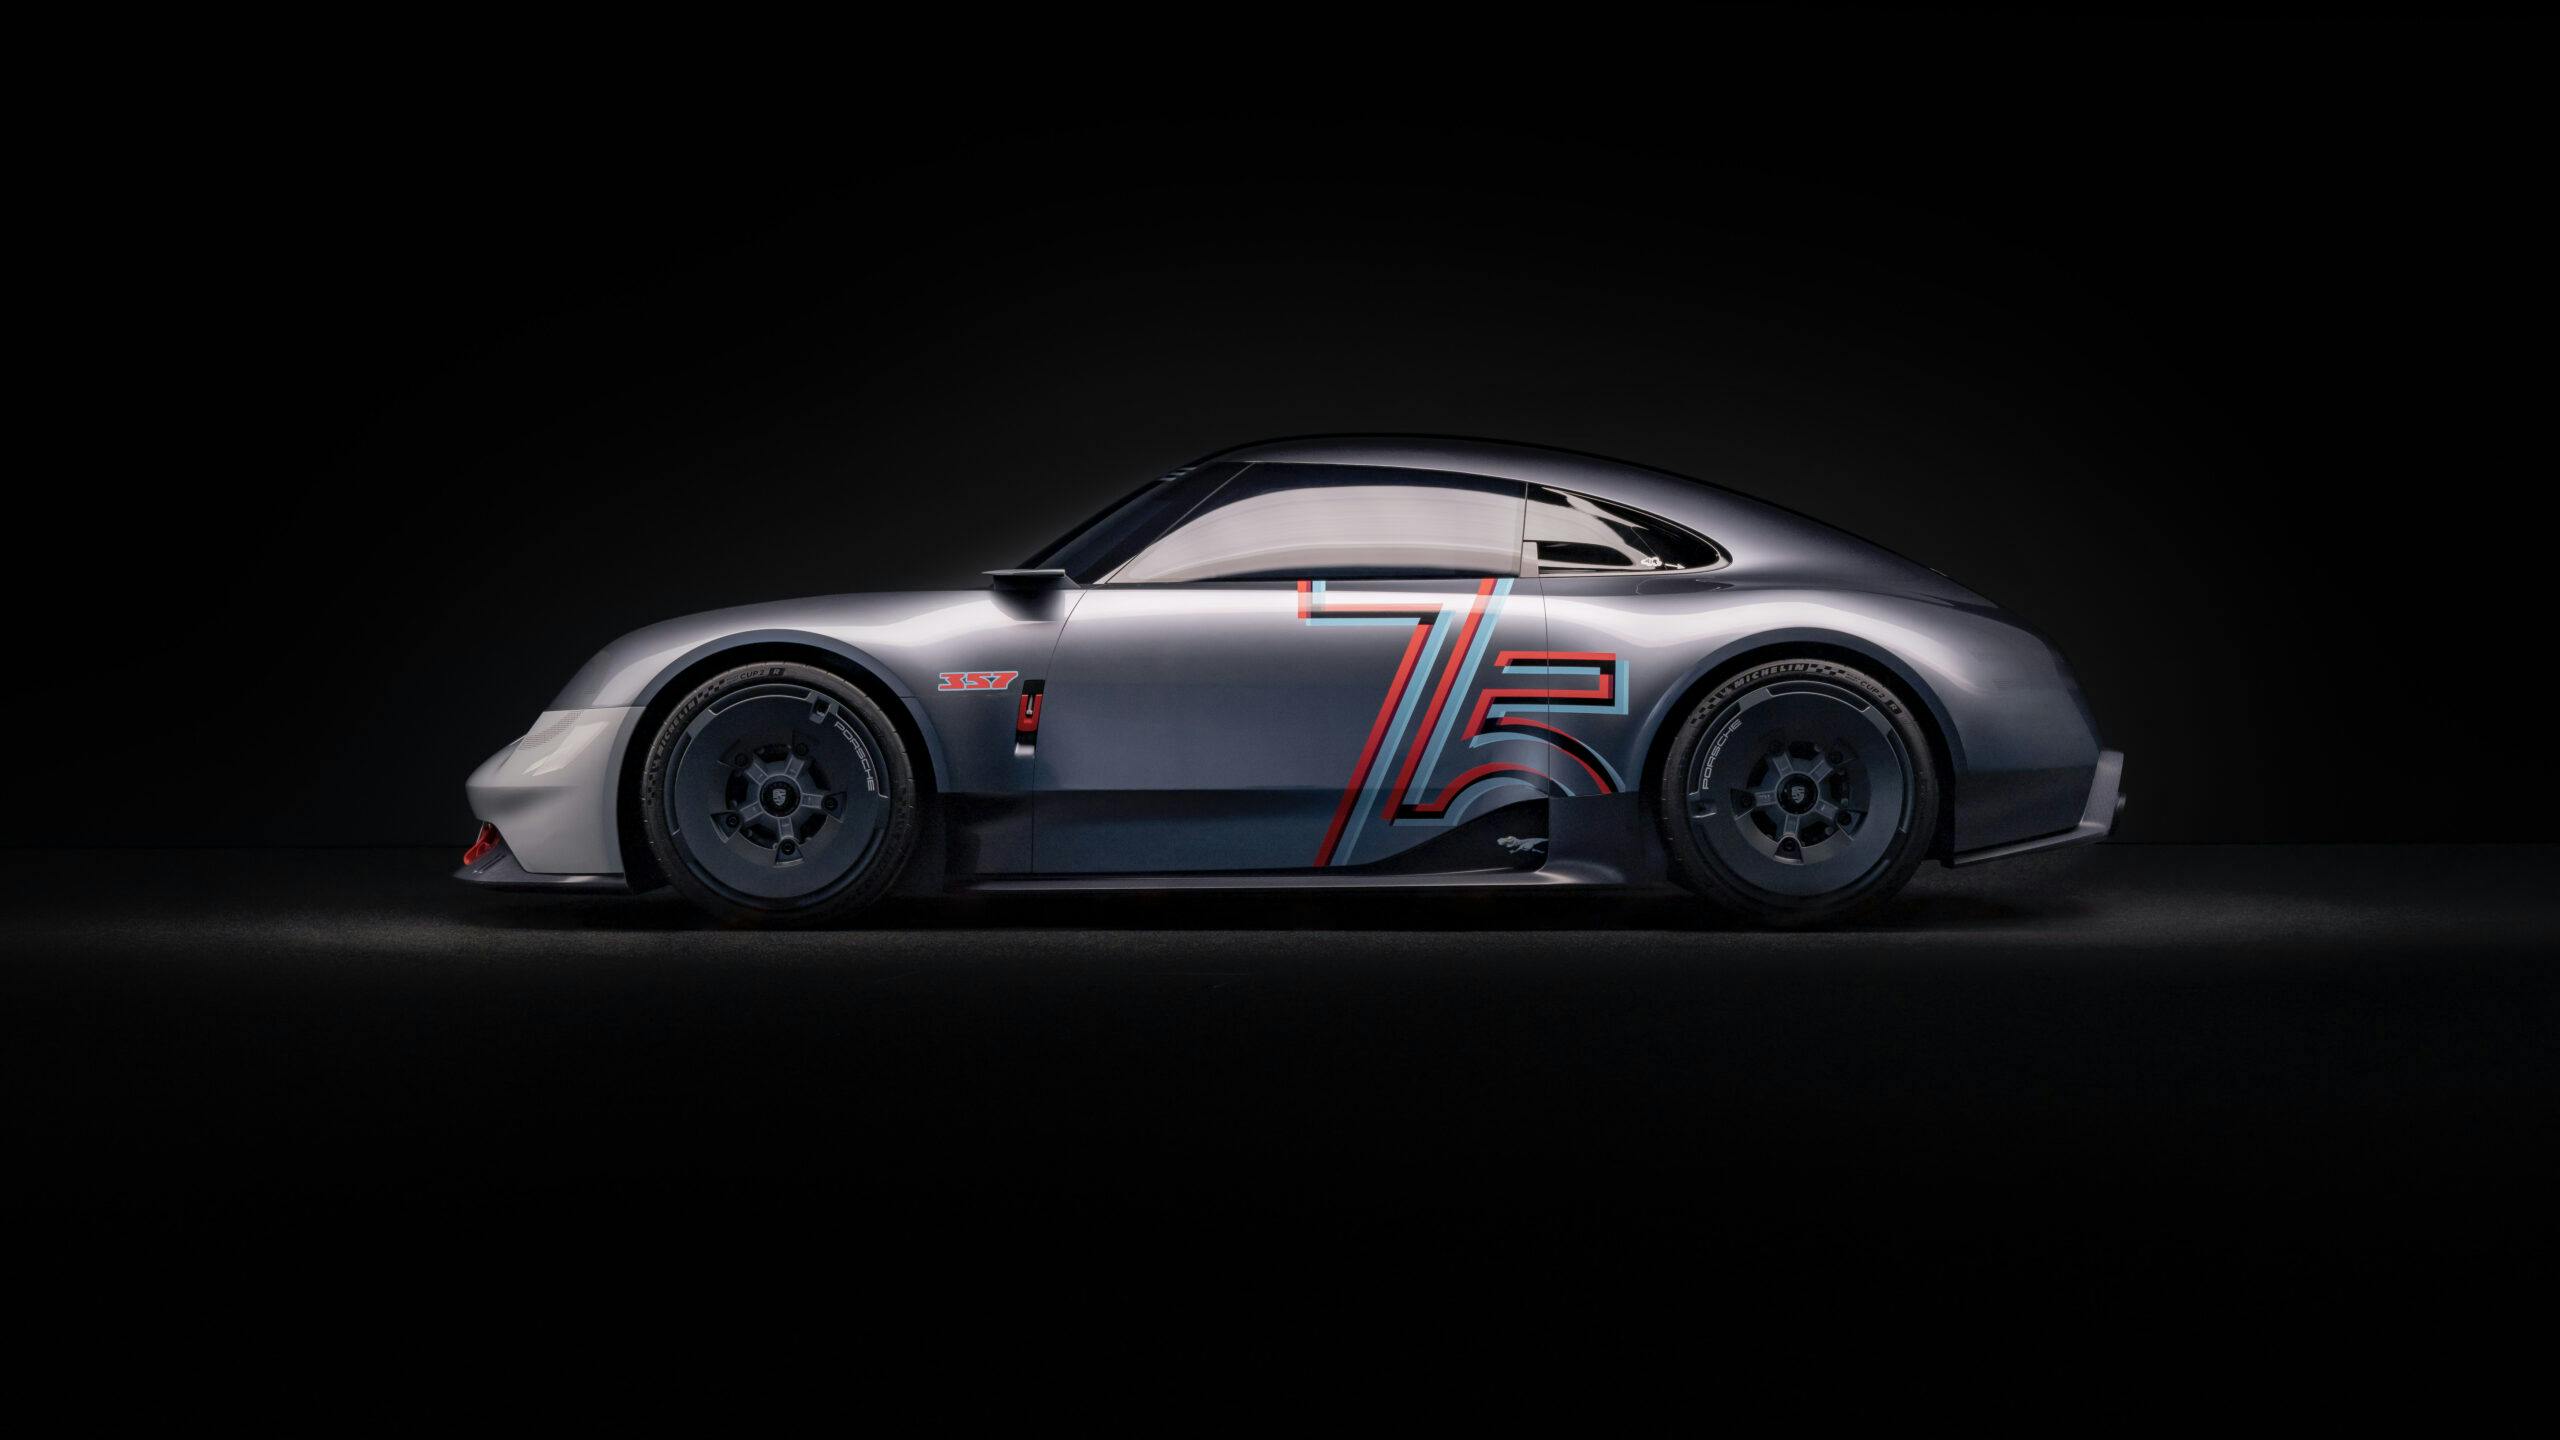 Porsche 357 design study exterior side profile dark